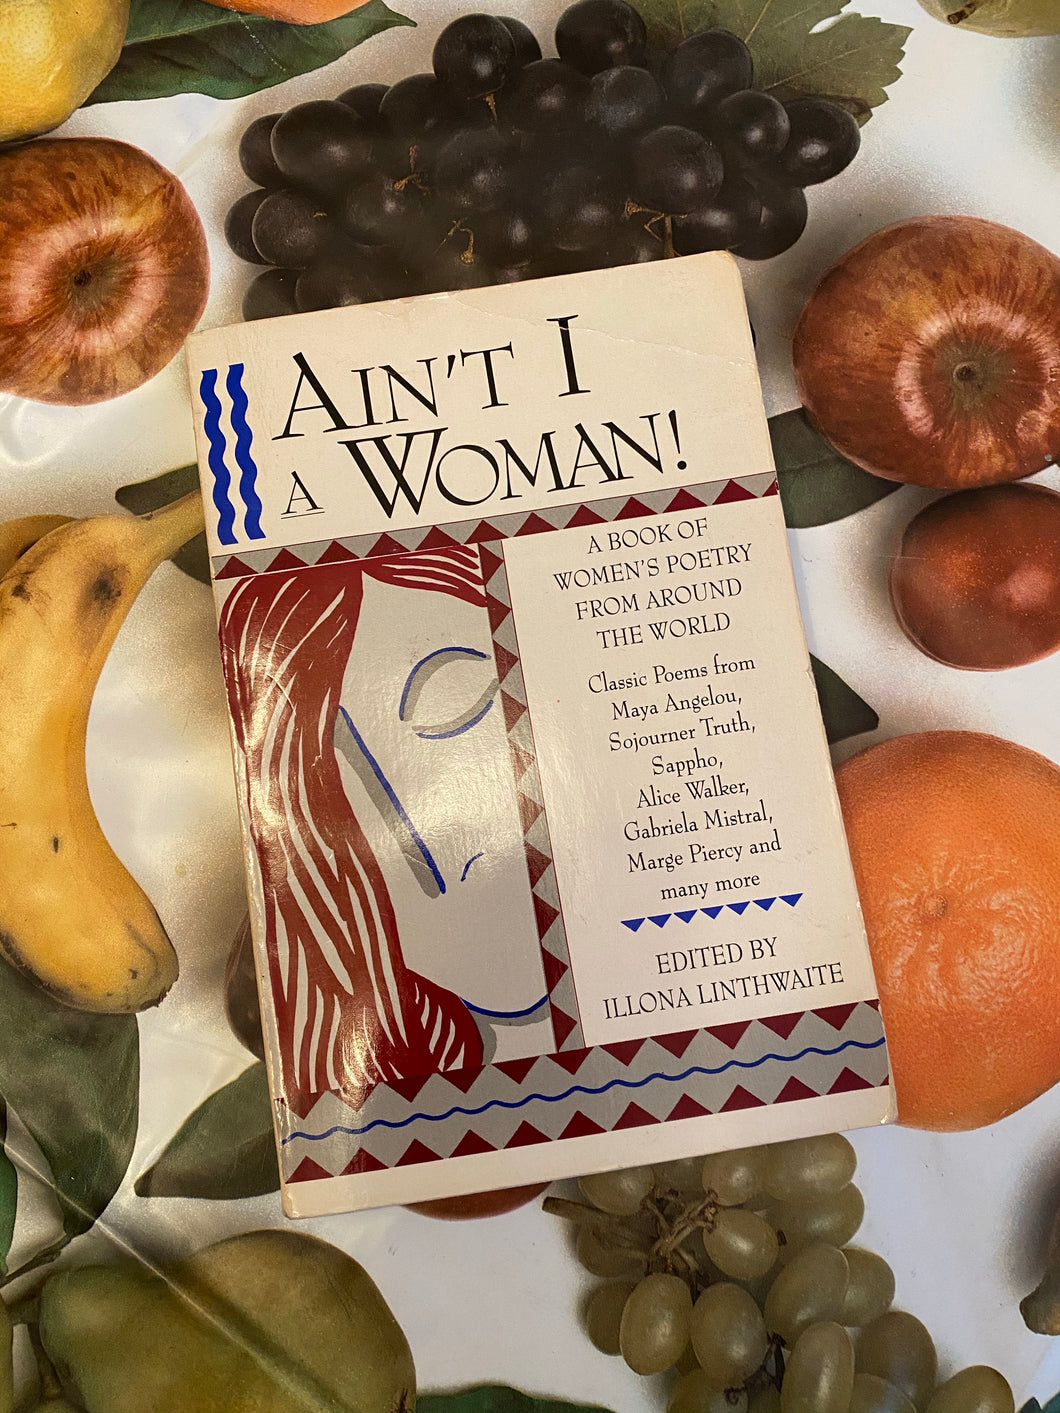 Ain’t I A Woman! Edited by Illini Linthwaithe